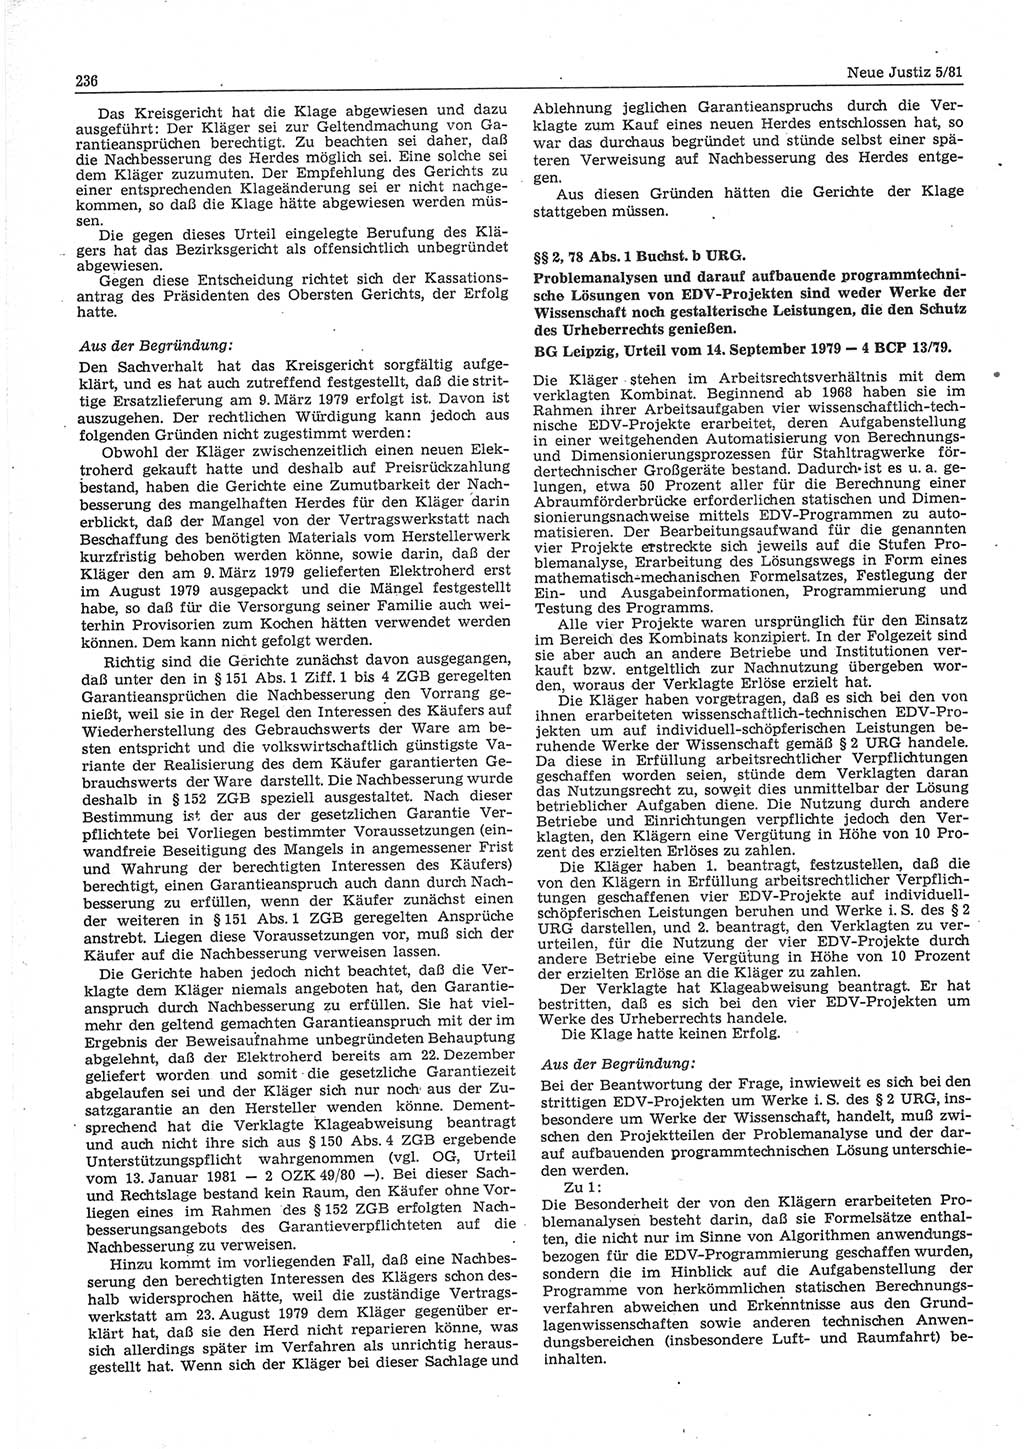 Neue Justiz (NJ), Zeitschrift für sozialistisches Recht und Gesetzlichkeit [Deutsche Demokratische Republik (DDR)], 35. Jahrgang 1981, Seite 236 (NJ DDR 1981, S. 236)